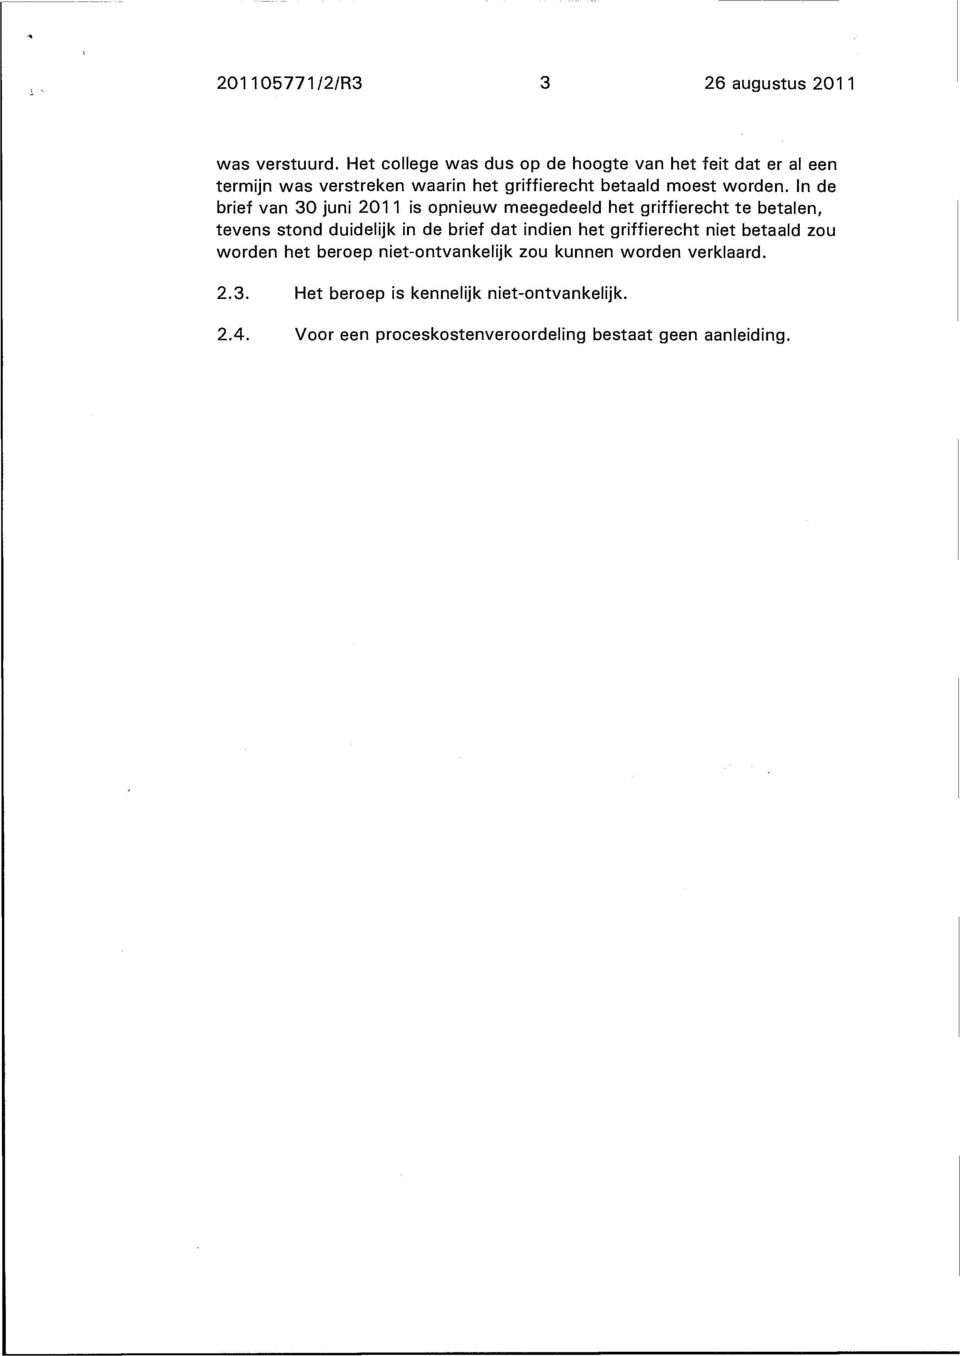 In de brief van 30 juni 2011 is opnieuw meegedeeld het griffierecht te betalen, tevens stond duidelijk in de brief dat indien